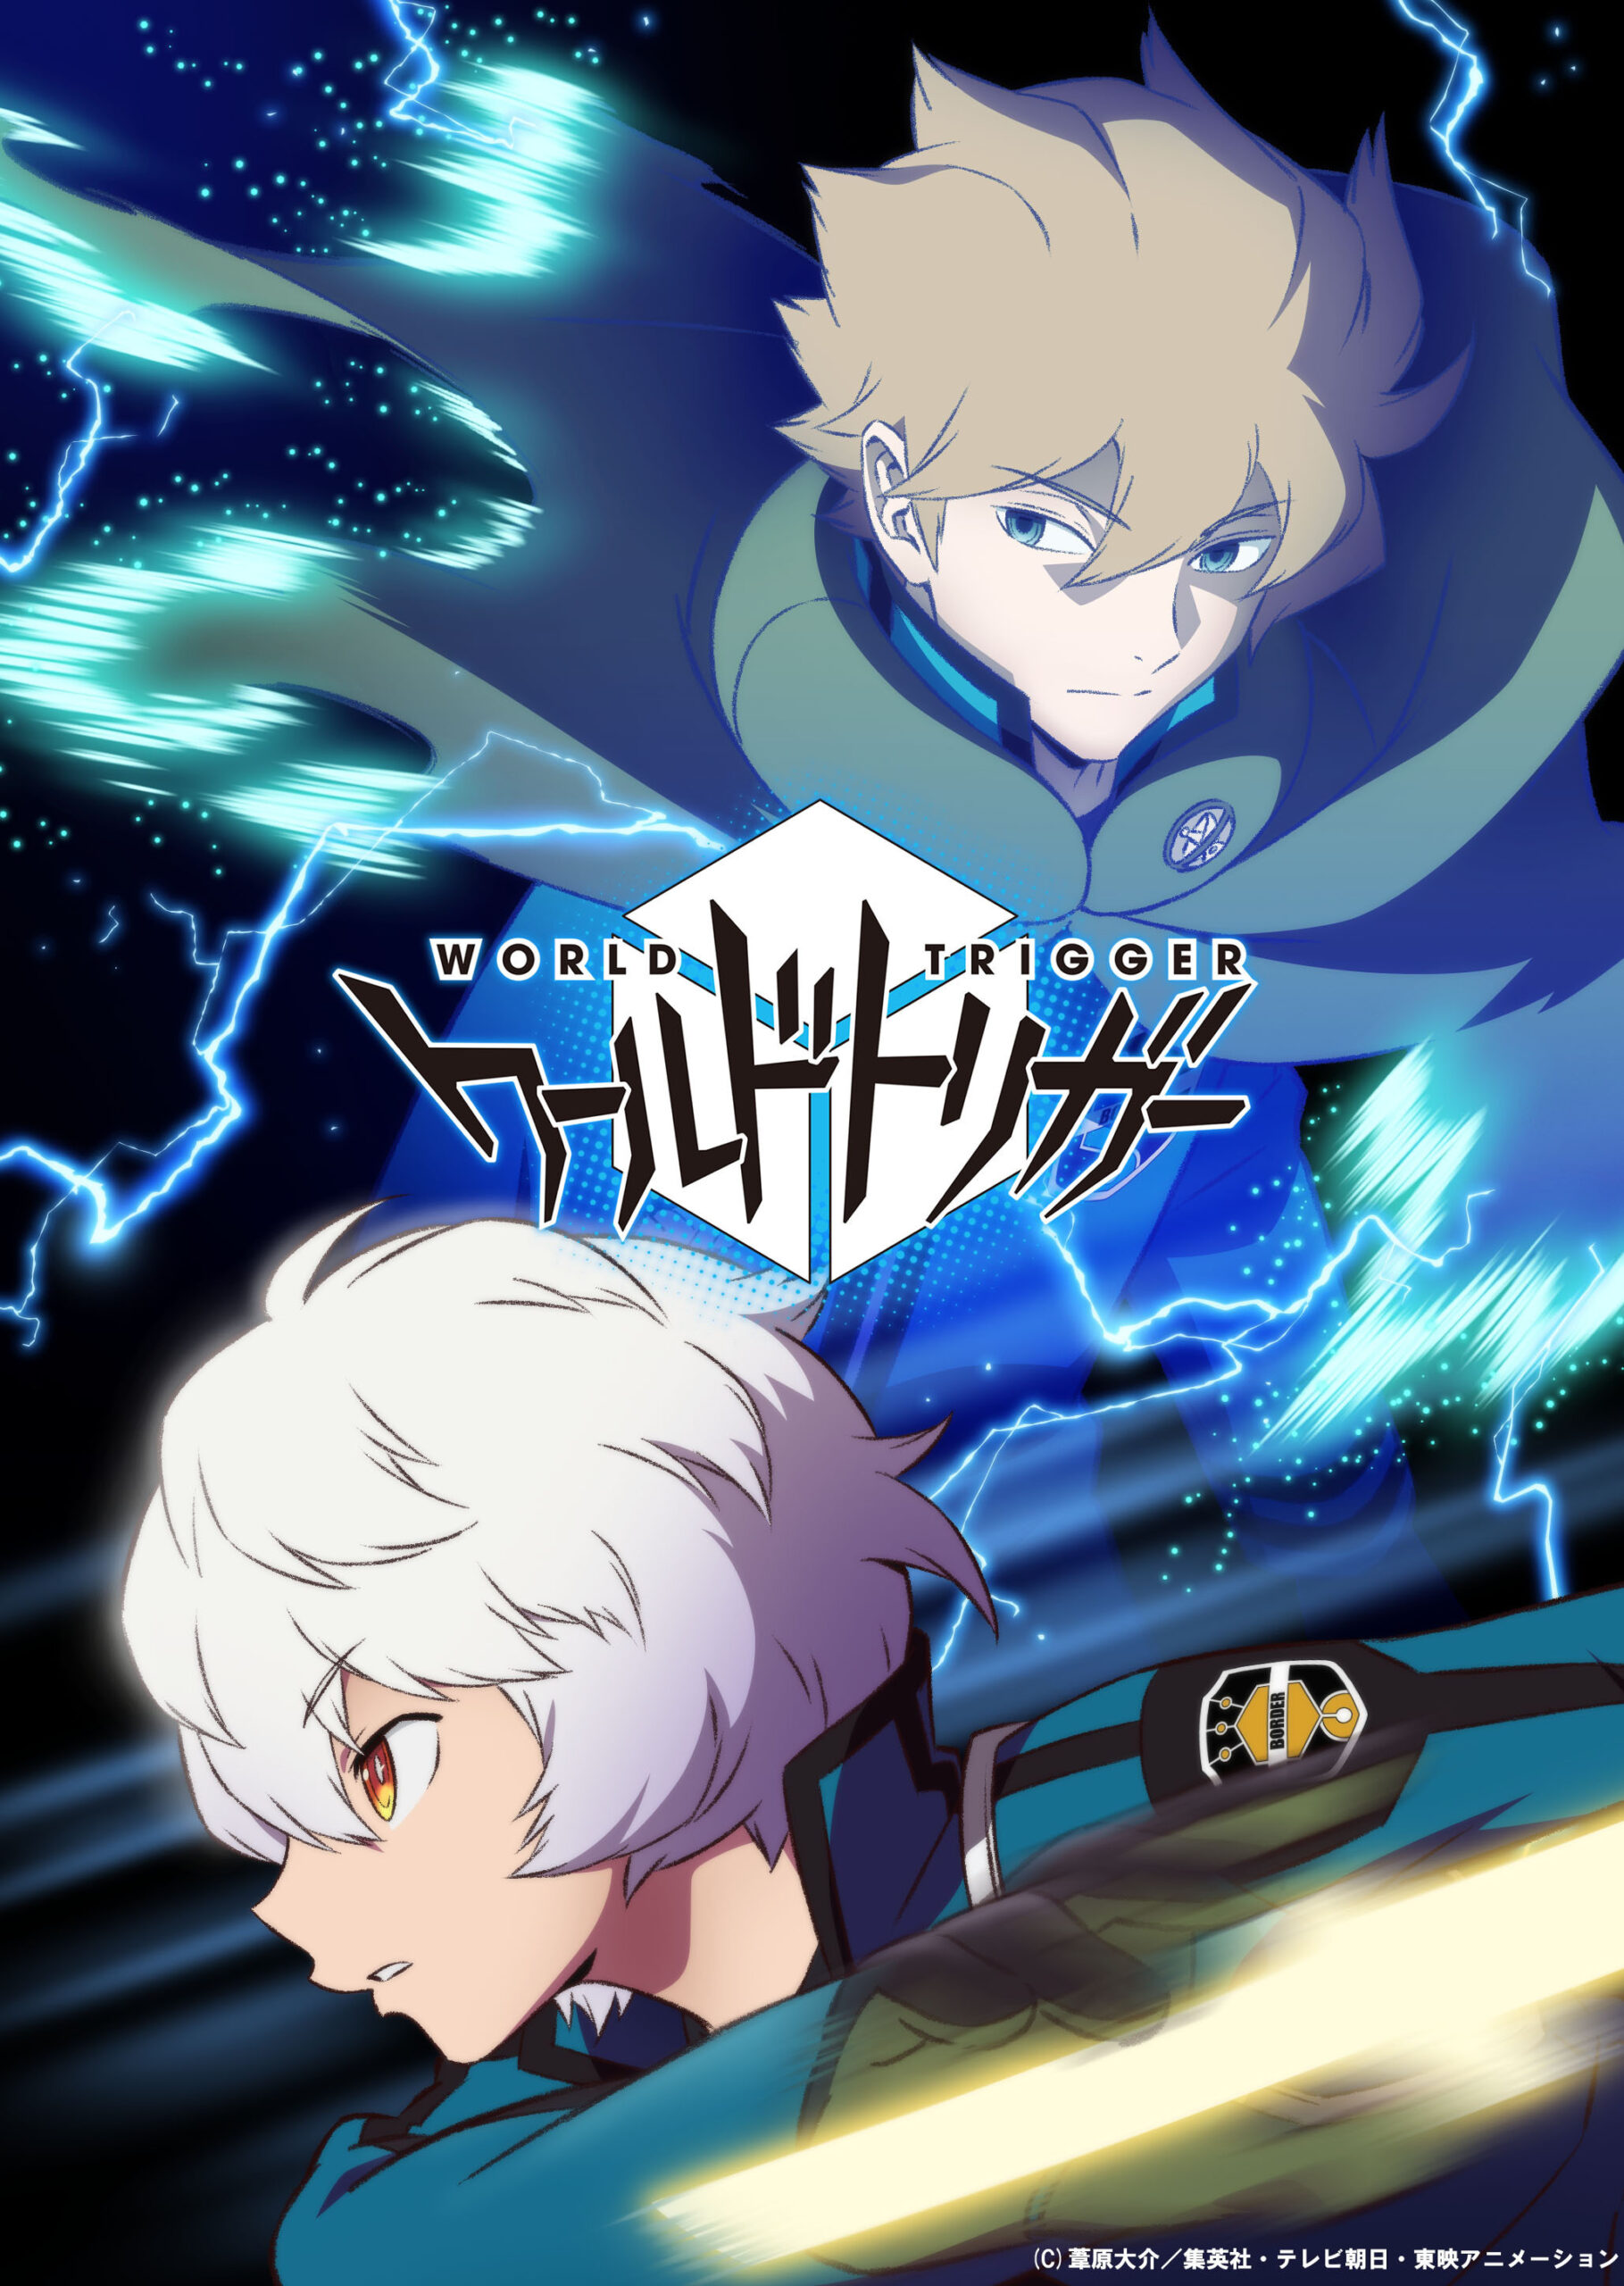 World Trigger: Toei anuncia 3ª temporada do anime – ANMTV